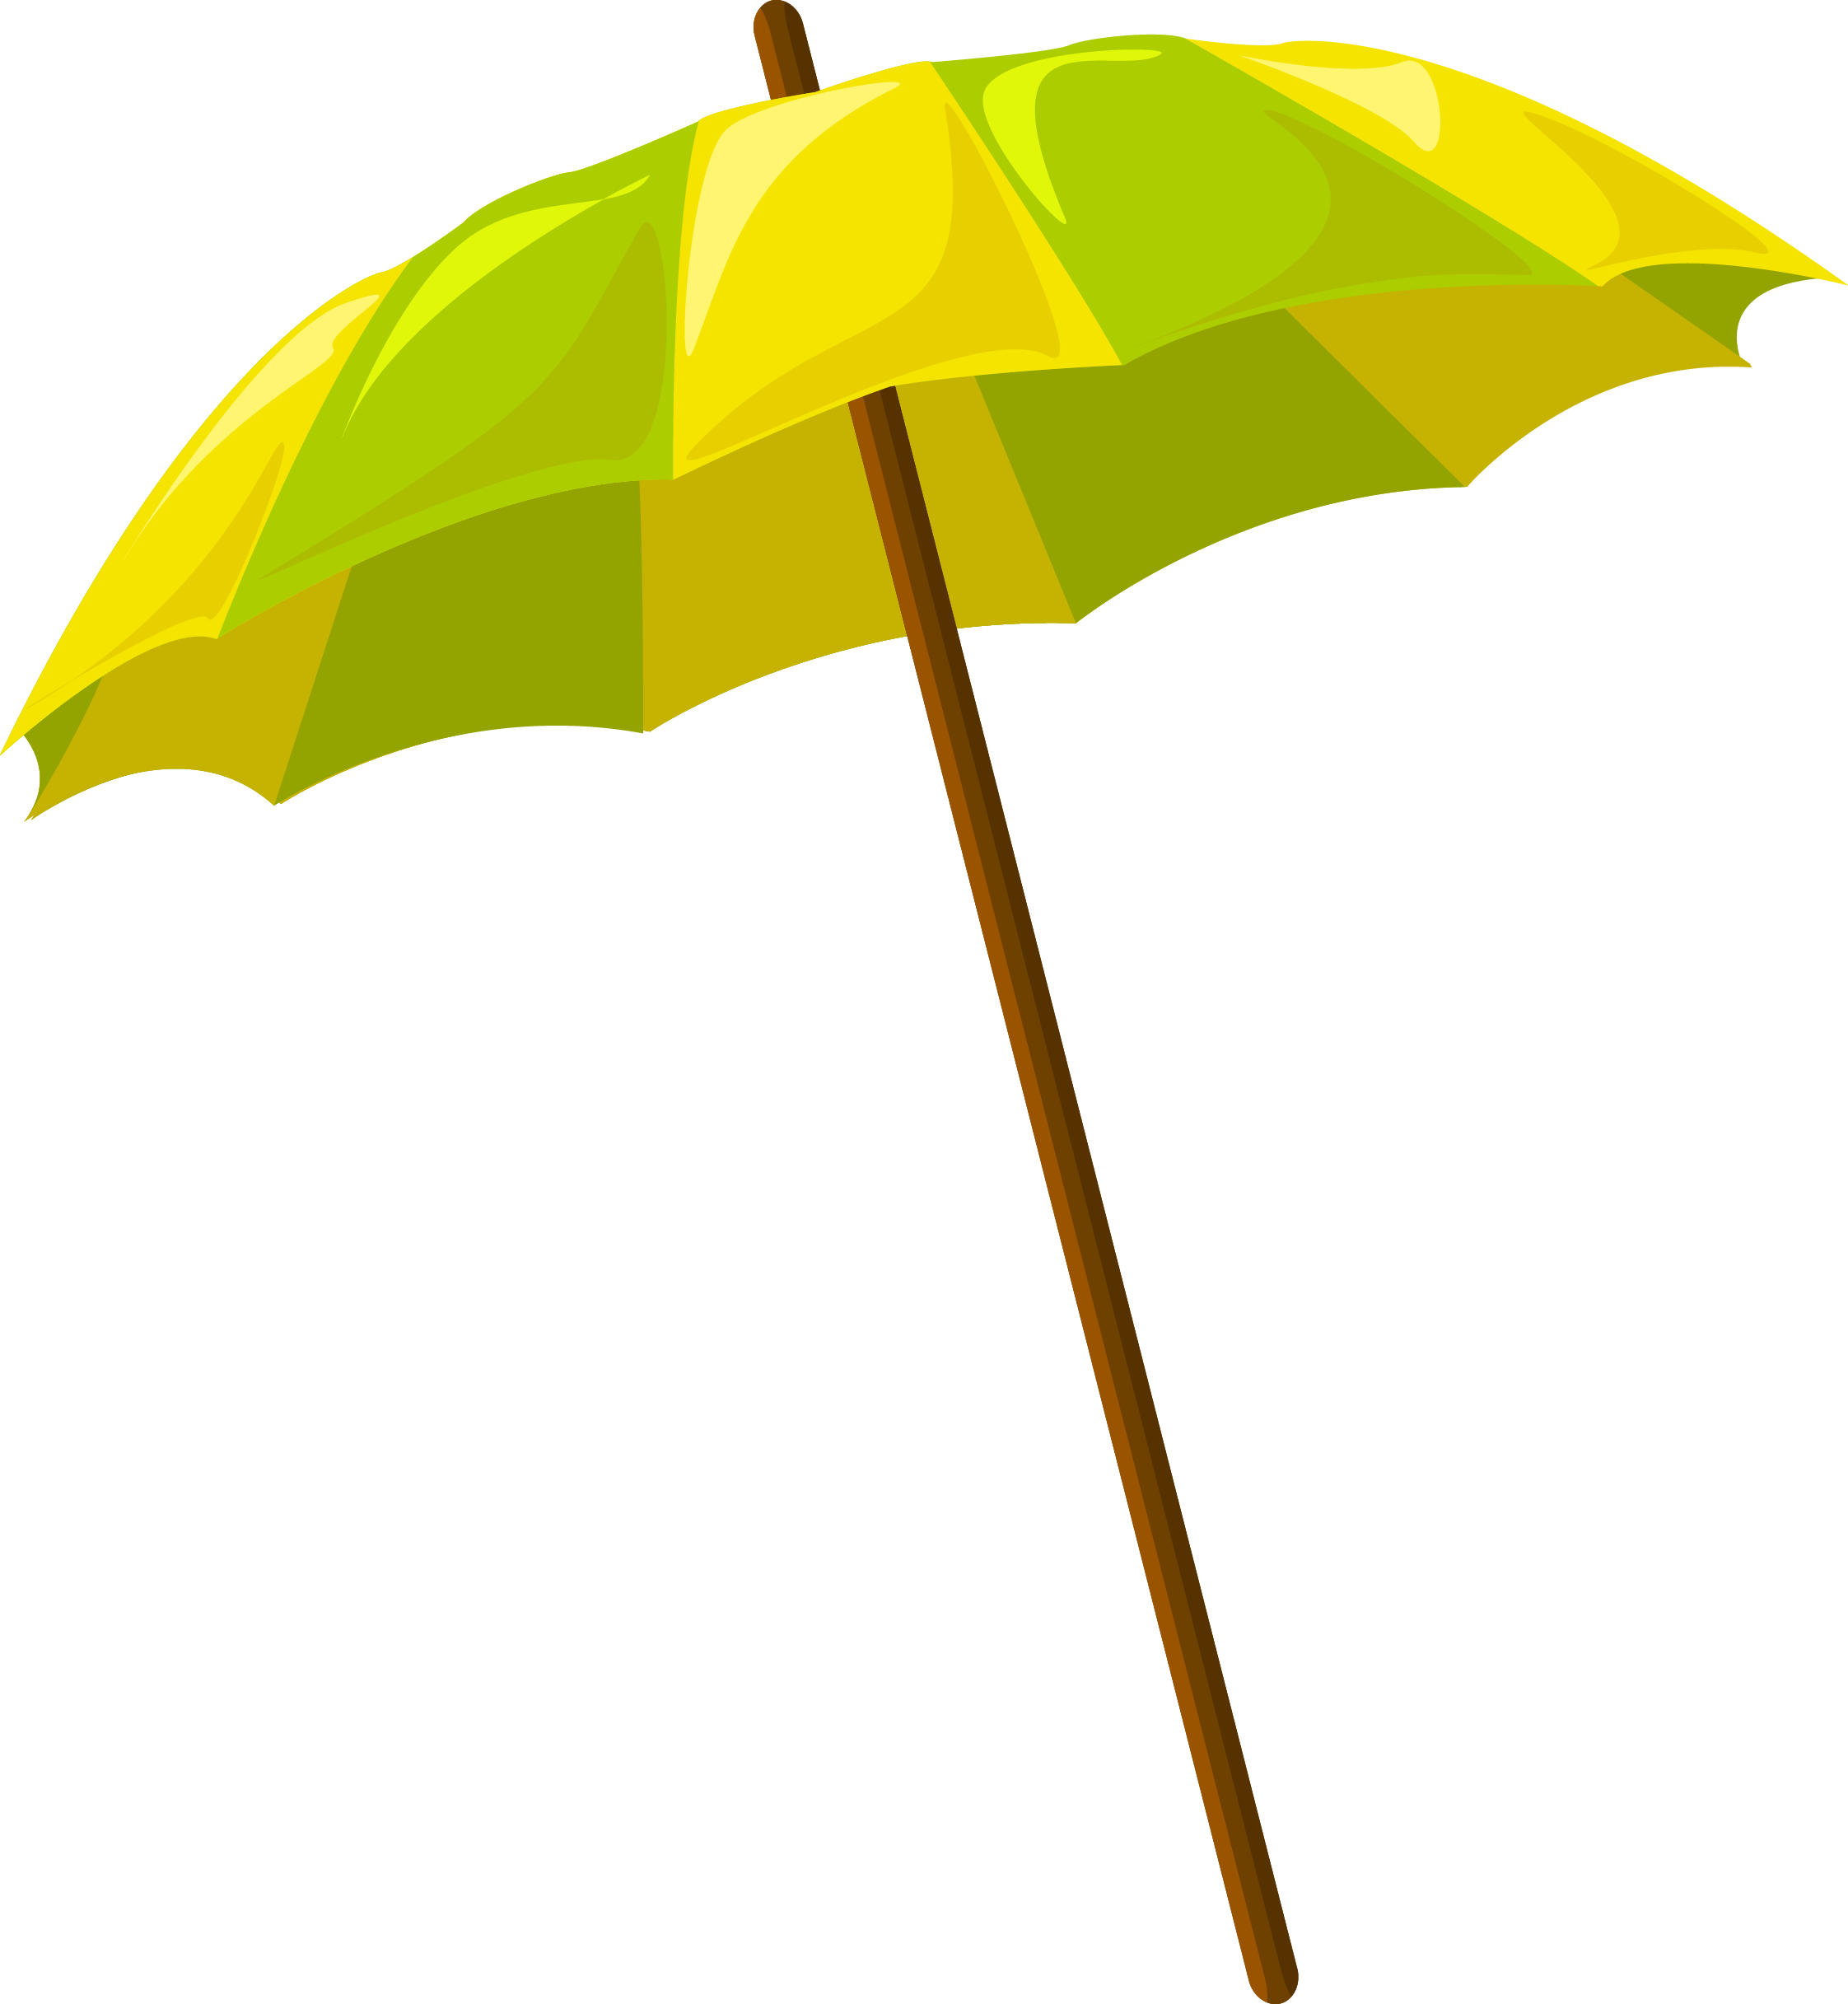 Umbrella Drawing - Umbrella - Umbrella (2244x2433)